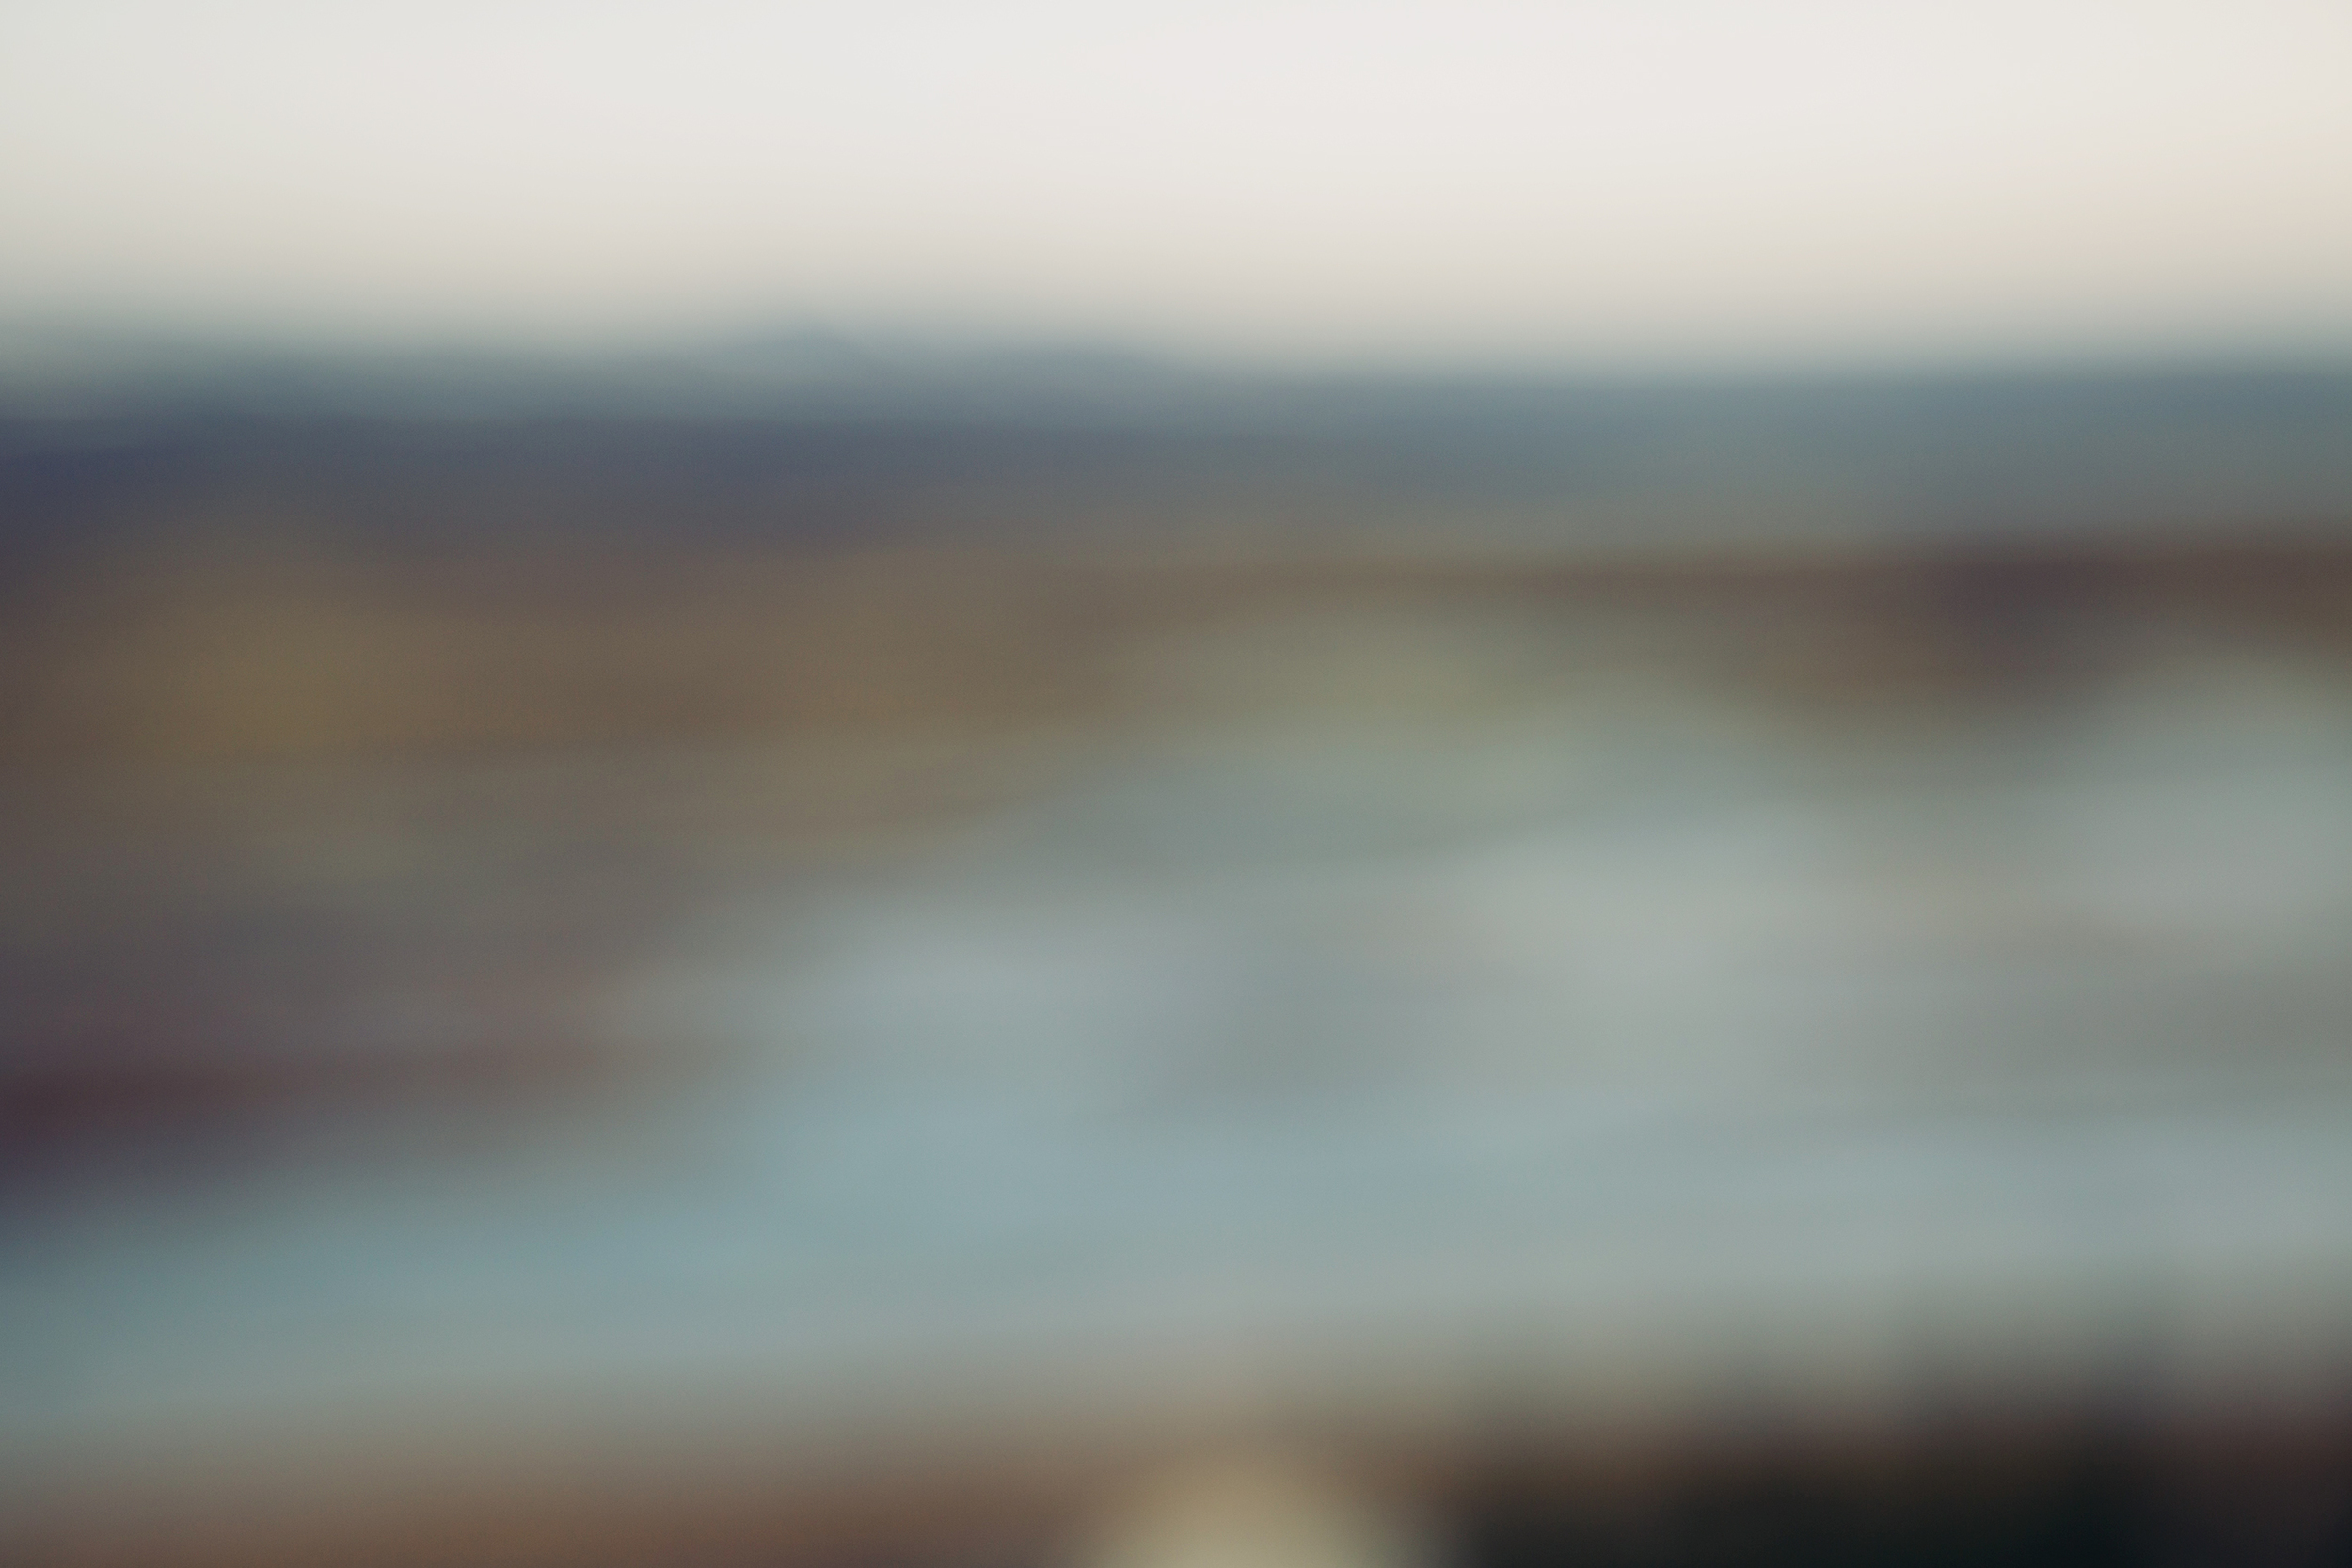 iceland blurred skies-6.jpg